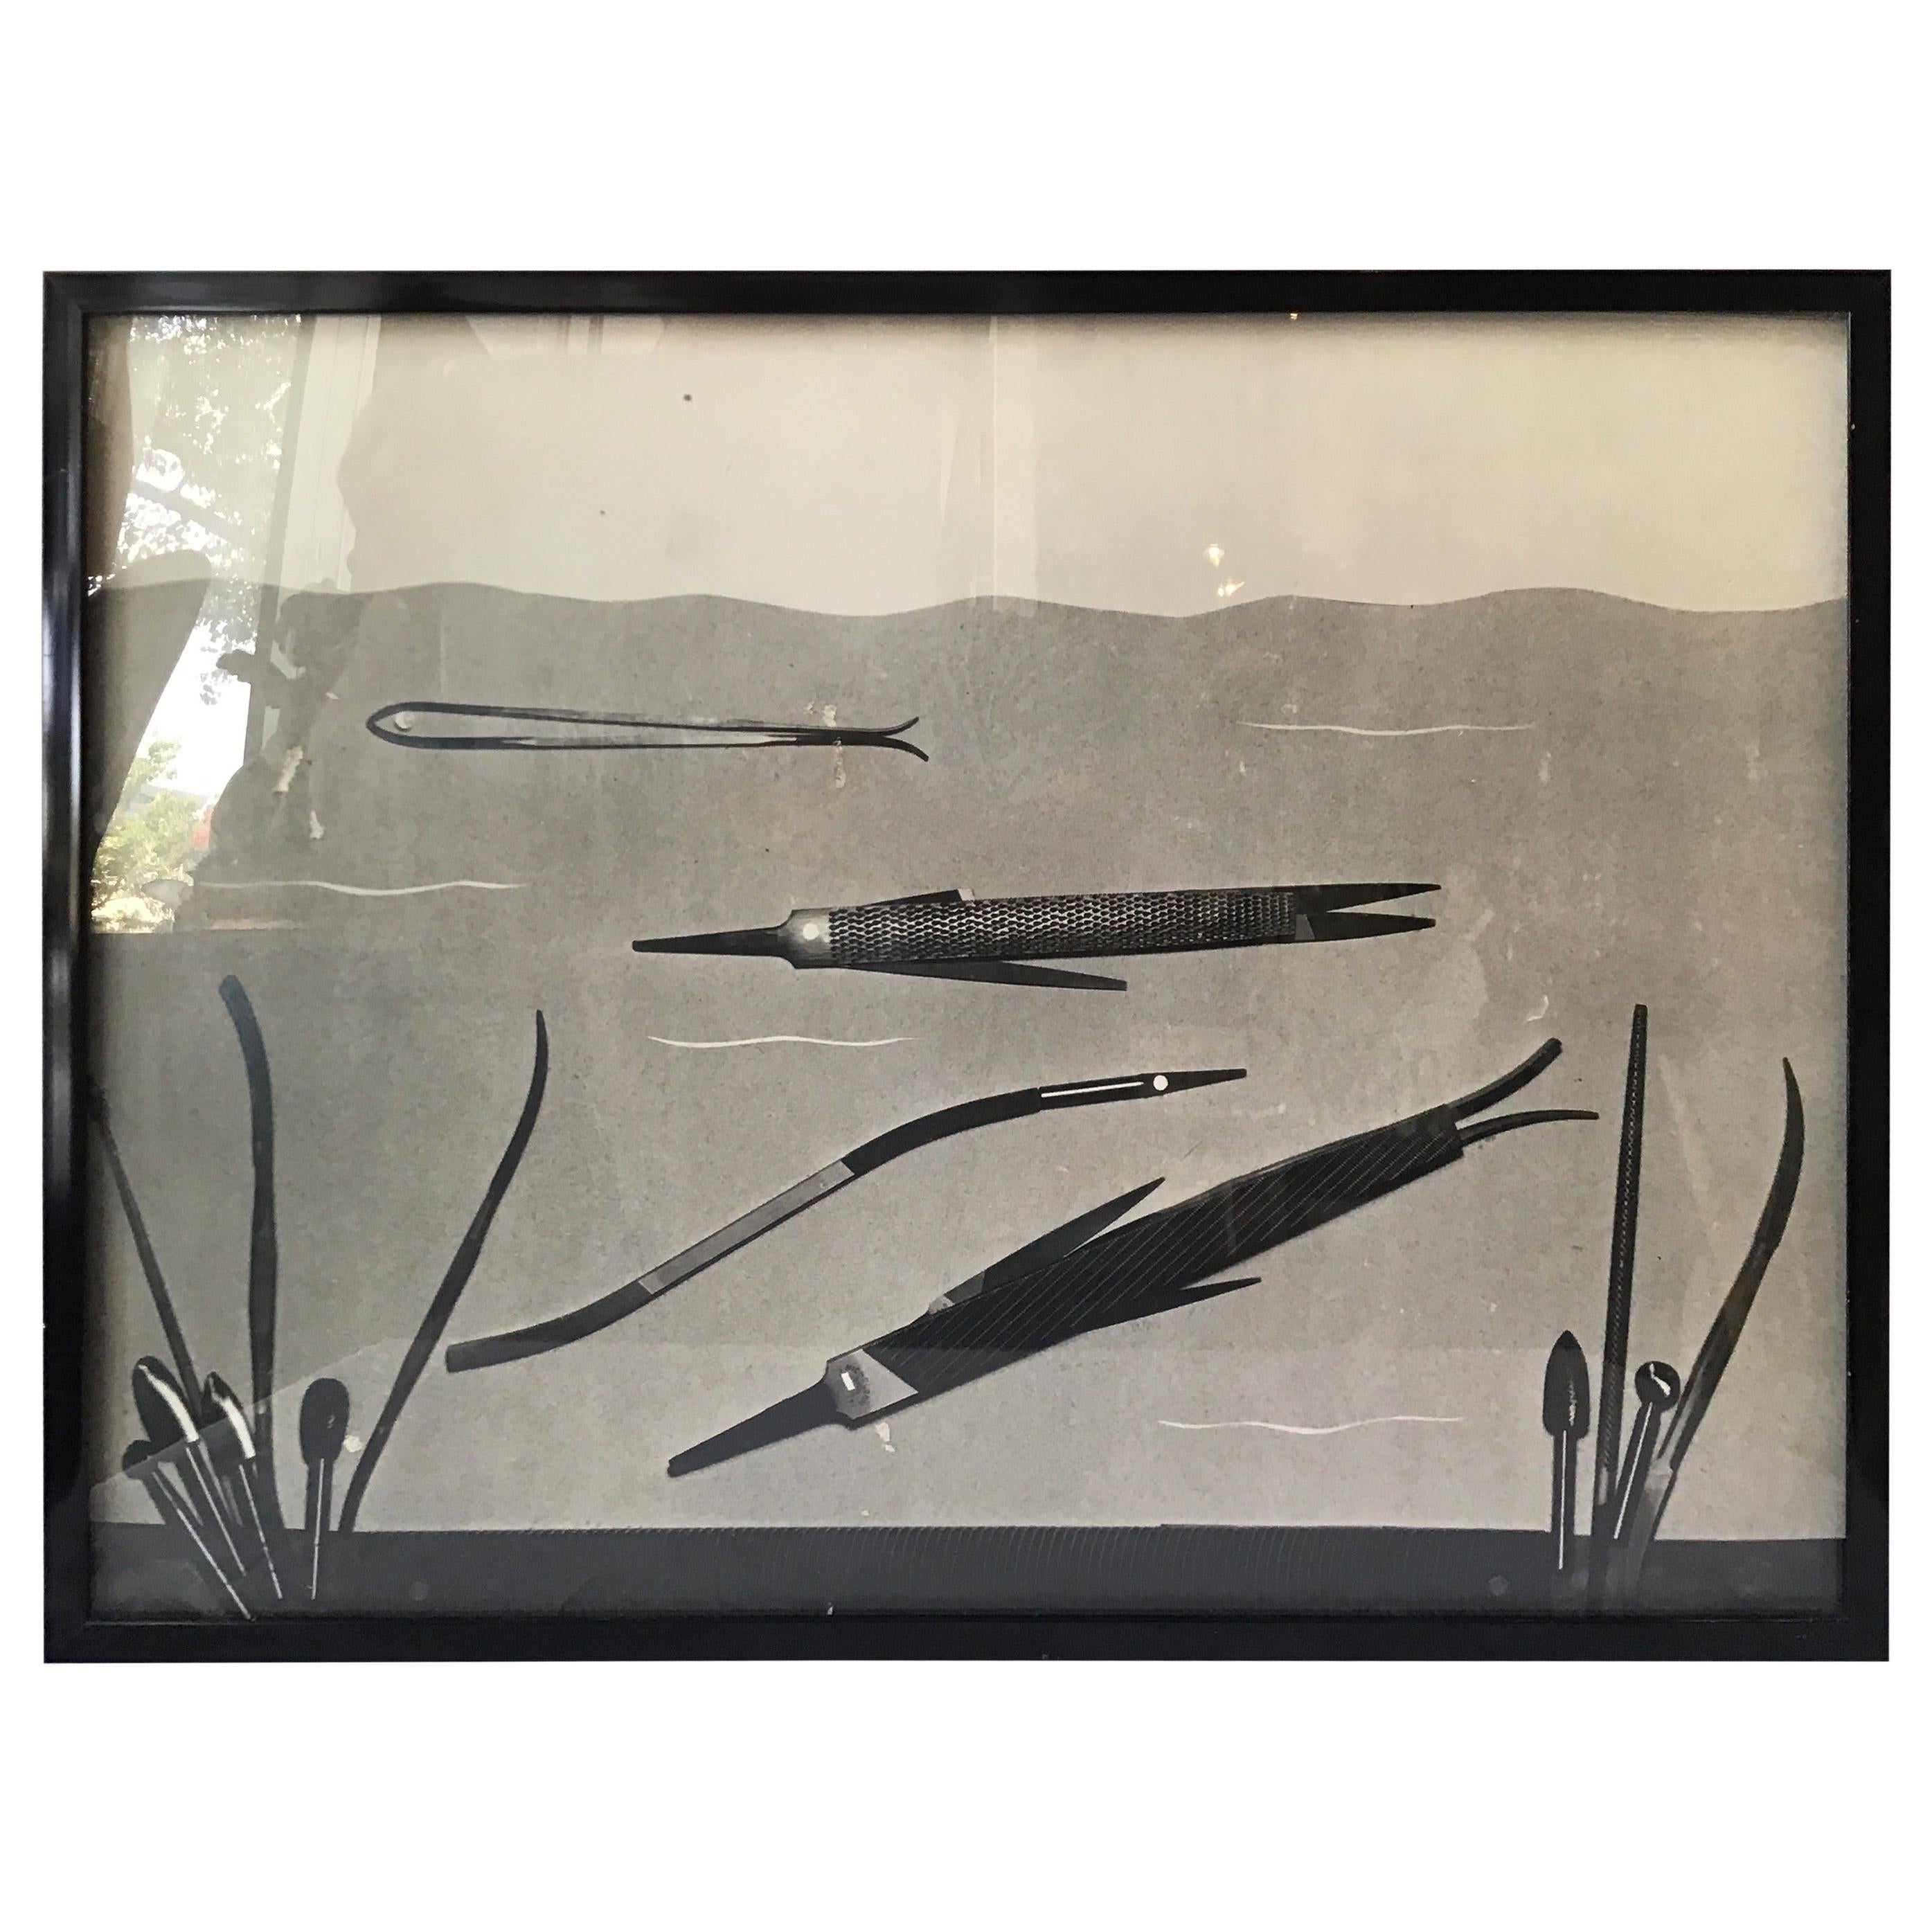 Laurence Tilley - Photographie de poisson réalisée à partir de fichiers, années 1950